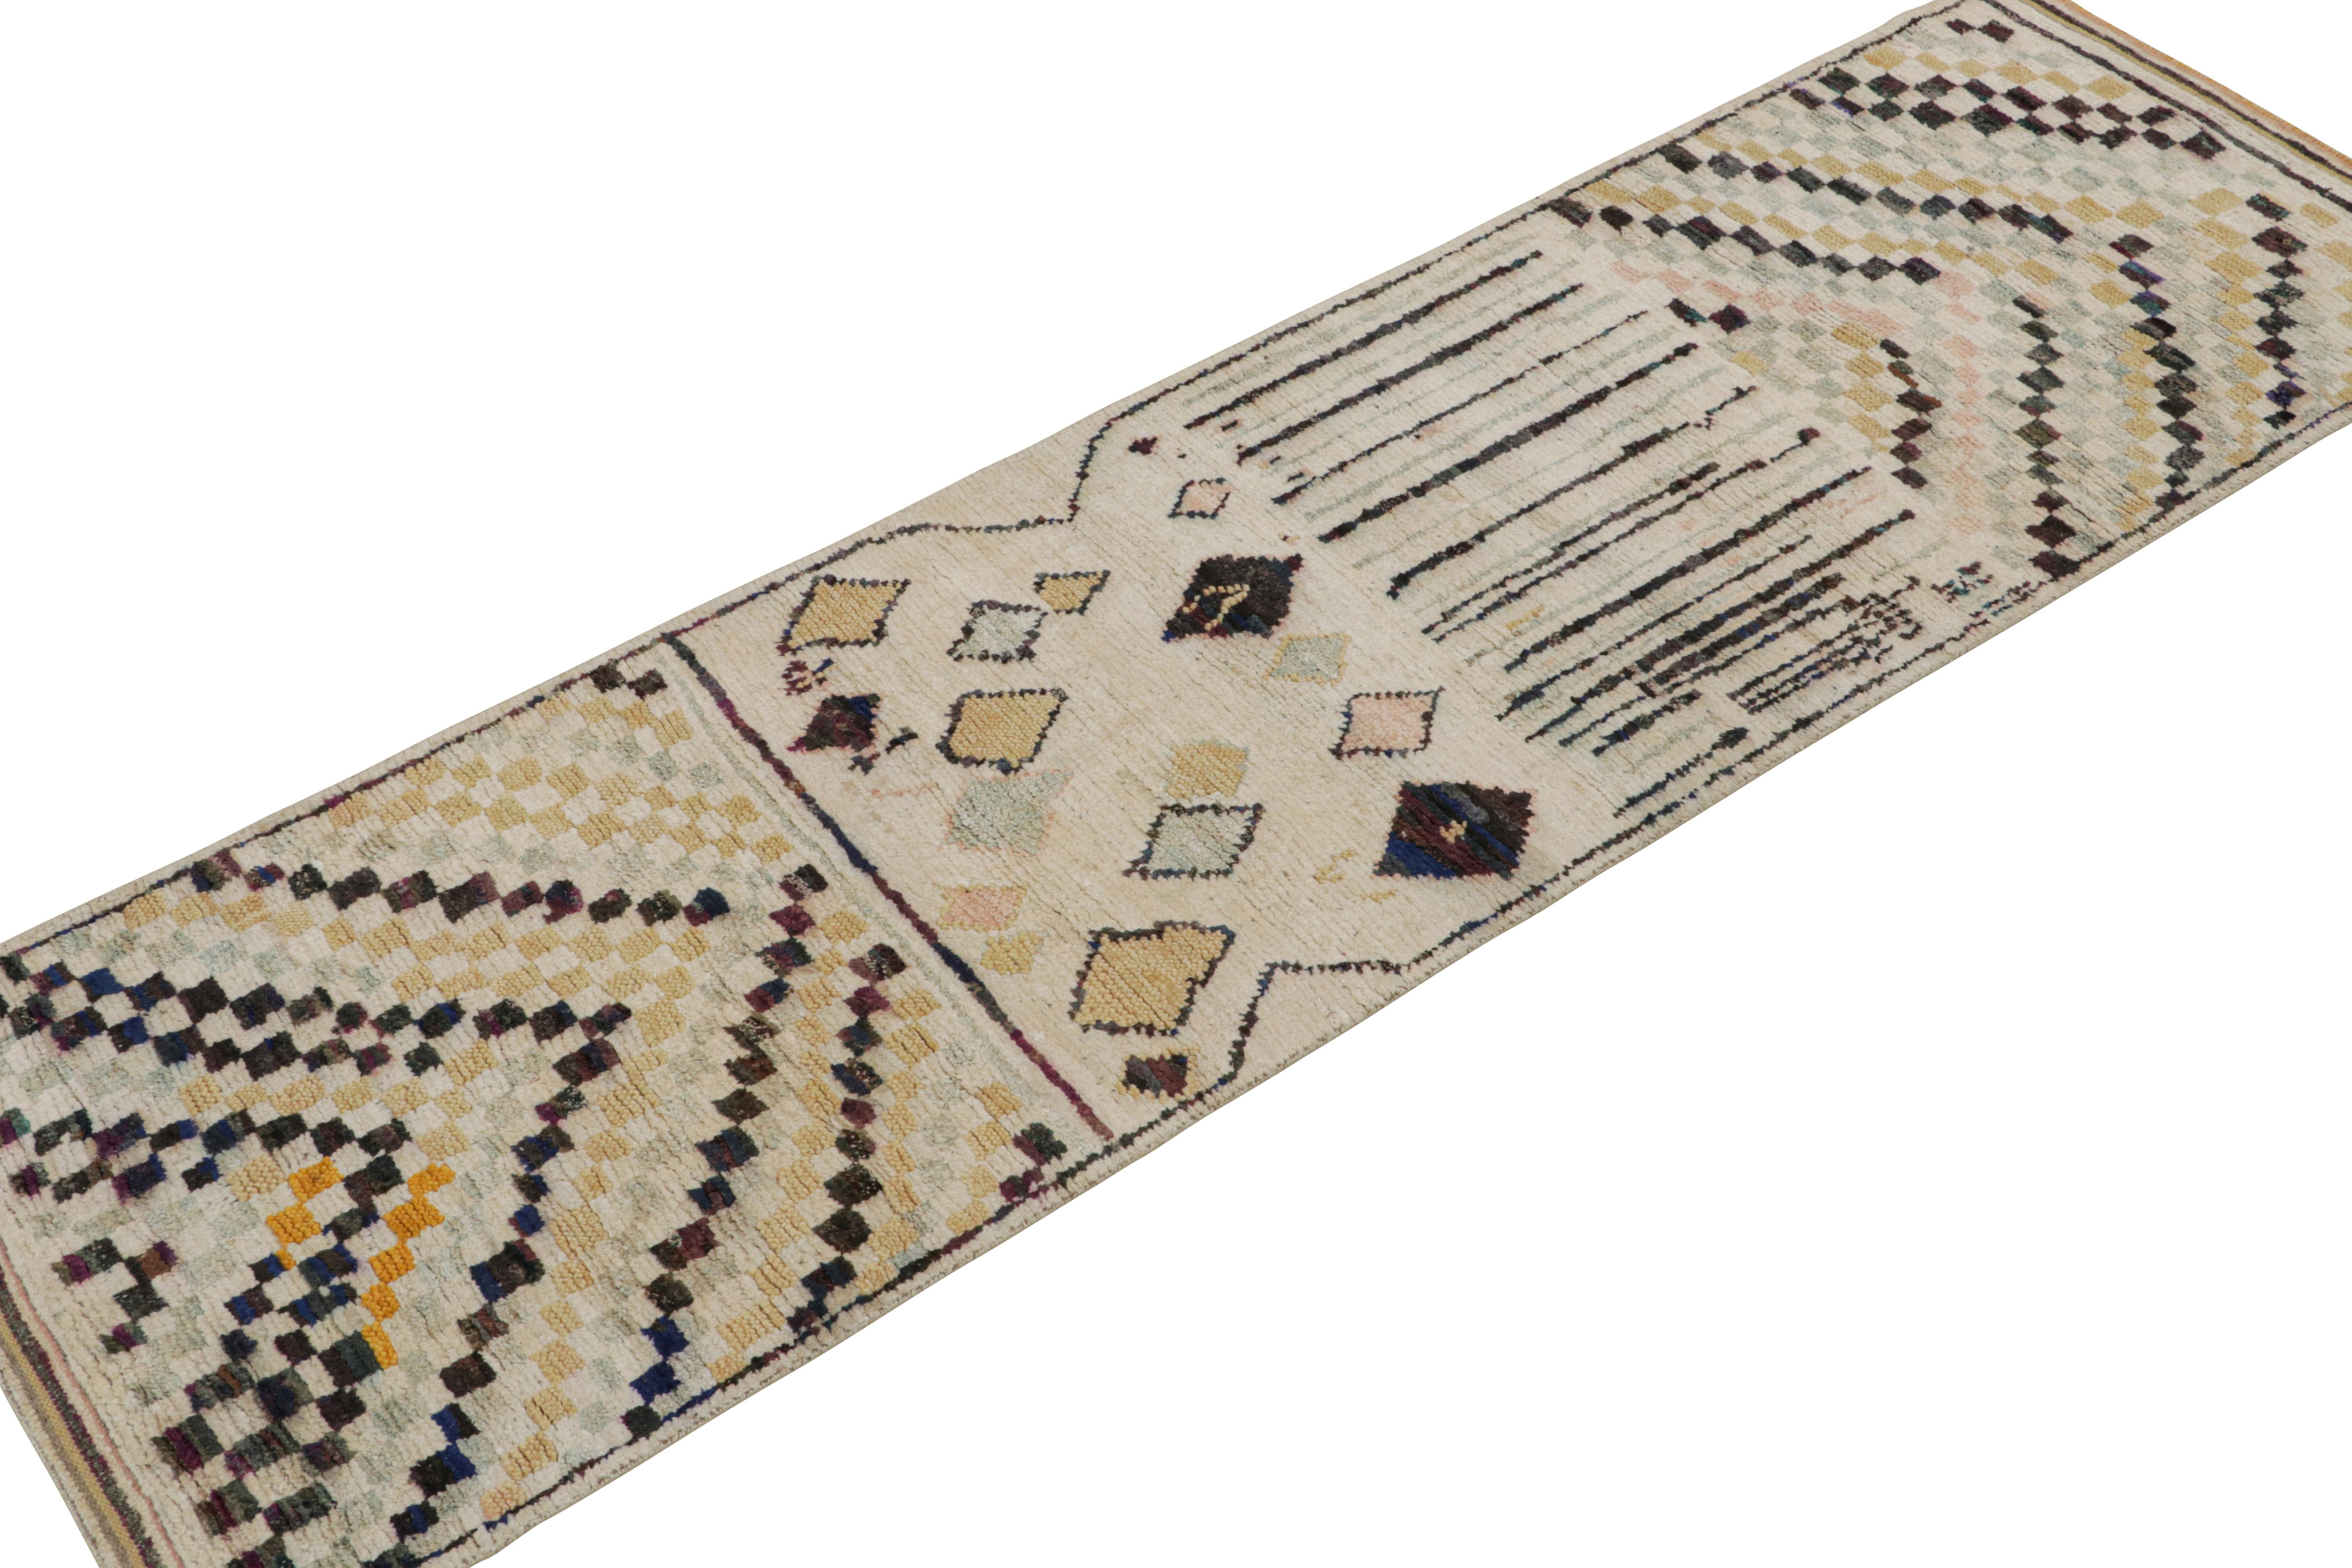 Noué à la main en laine, soie et coton, ce tapis de course 3x10 est un nouvel ajout à la collection de tapis marocains de Rug & Kilim. 

Sur le Design/One

Ces motifs représentent une version moderne du style primitiviste berbère, avec des motifs